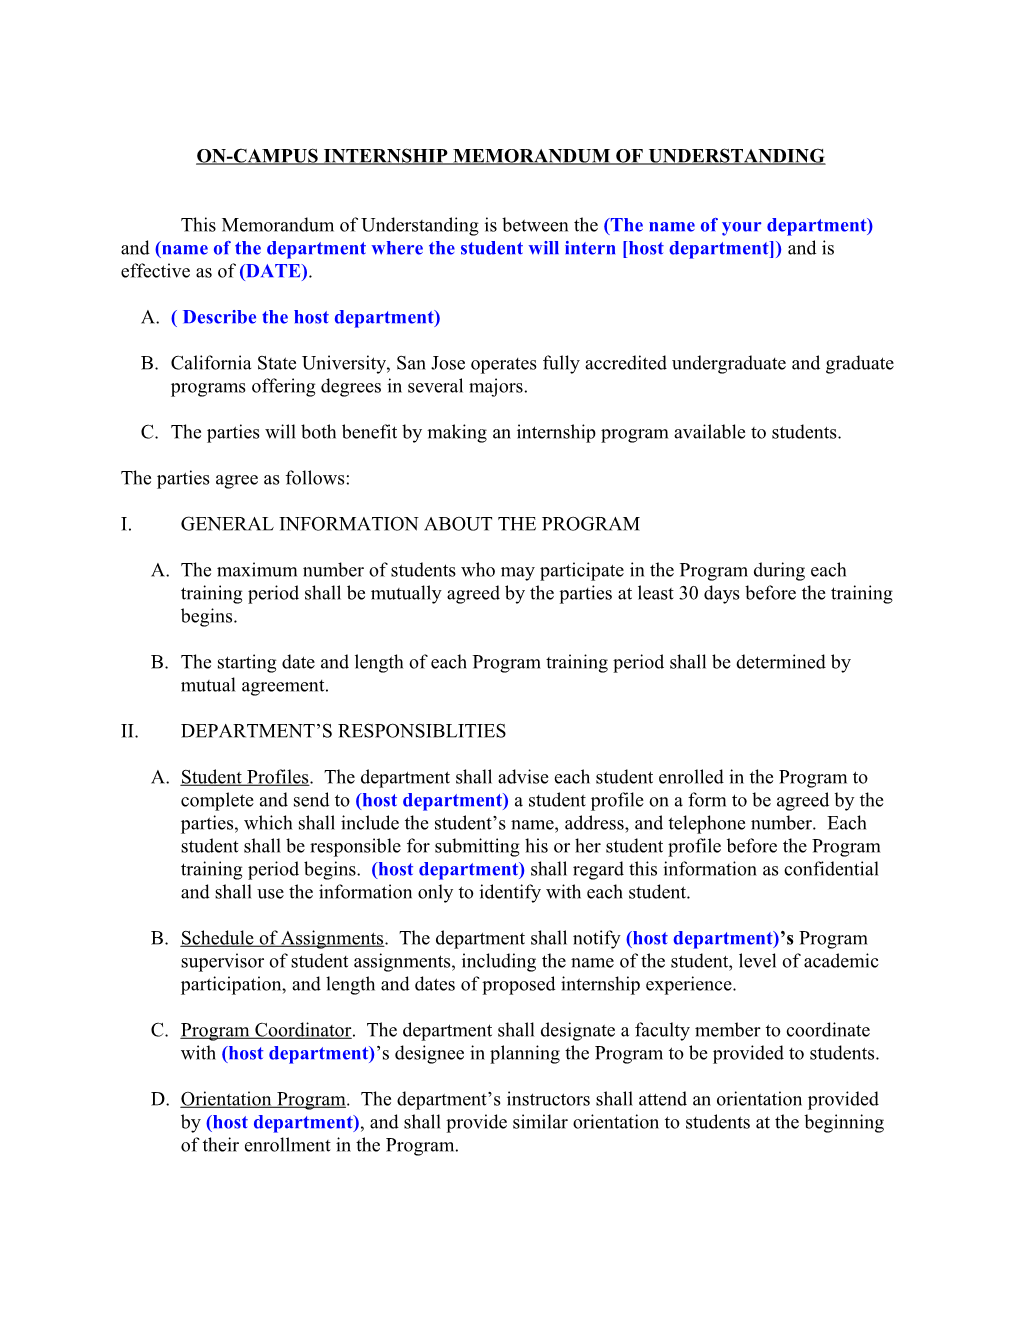 Clinical Internship Agreement